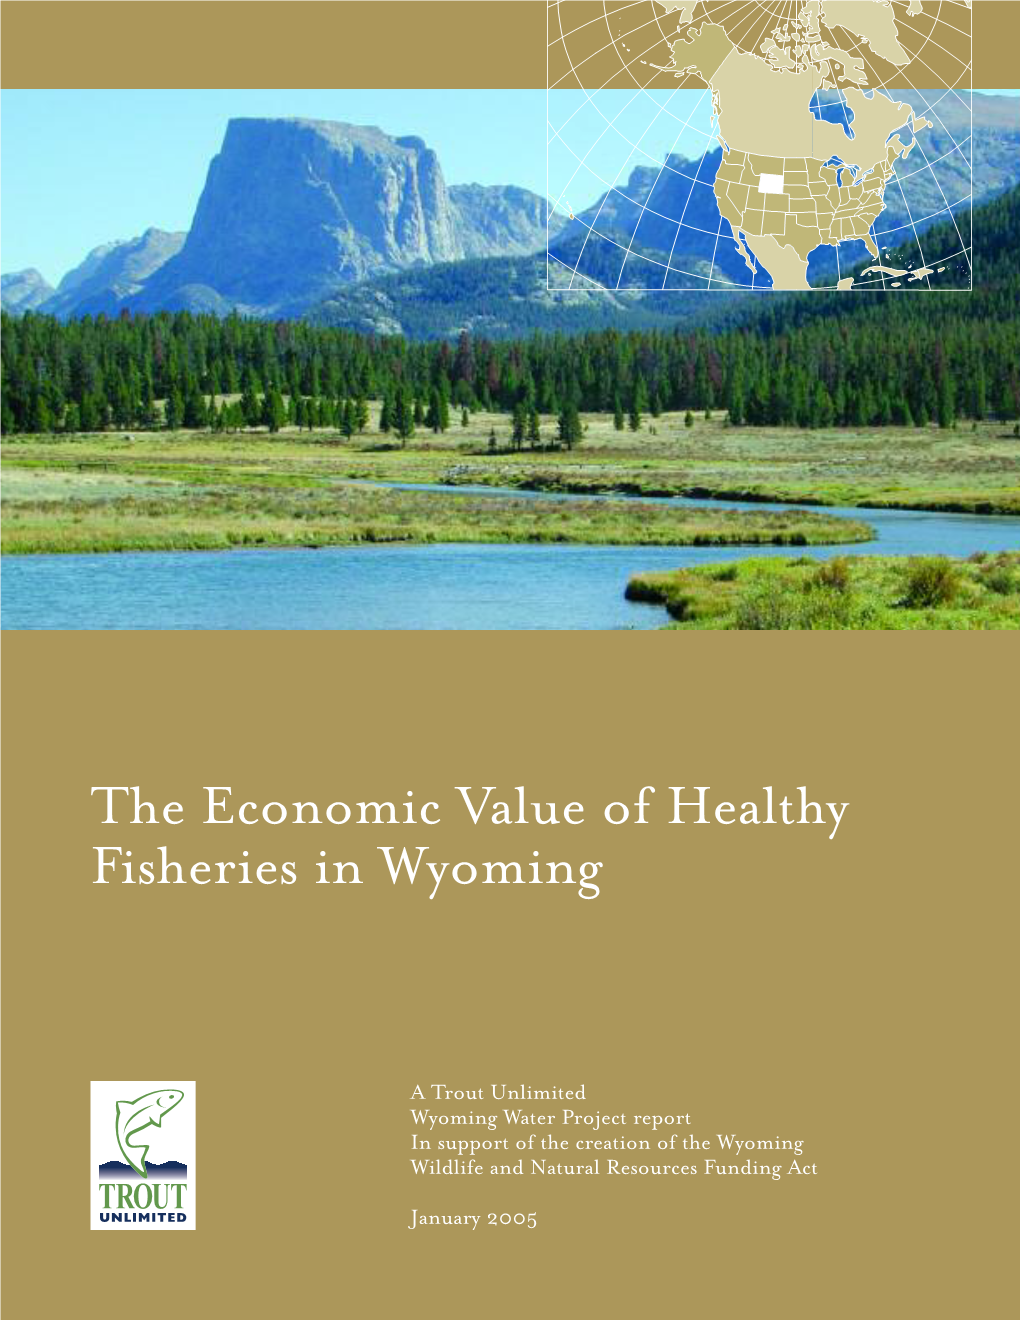 Wyoming Fisheries